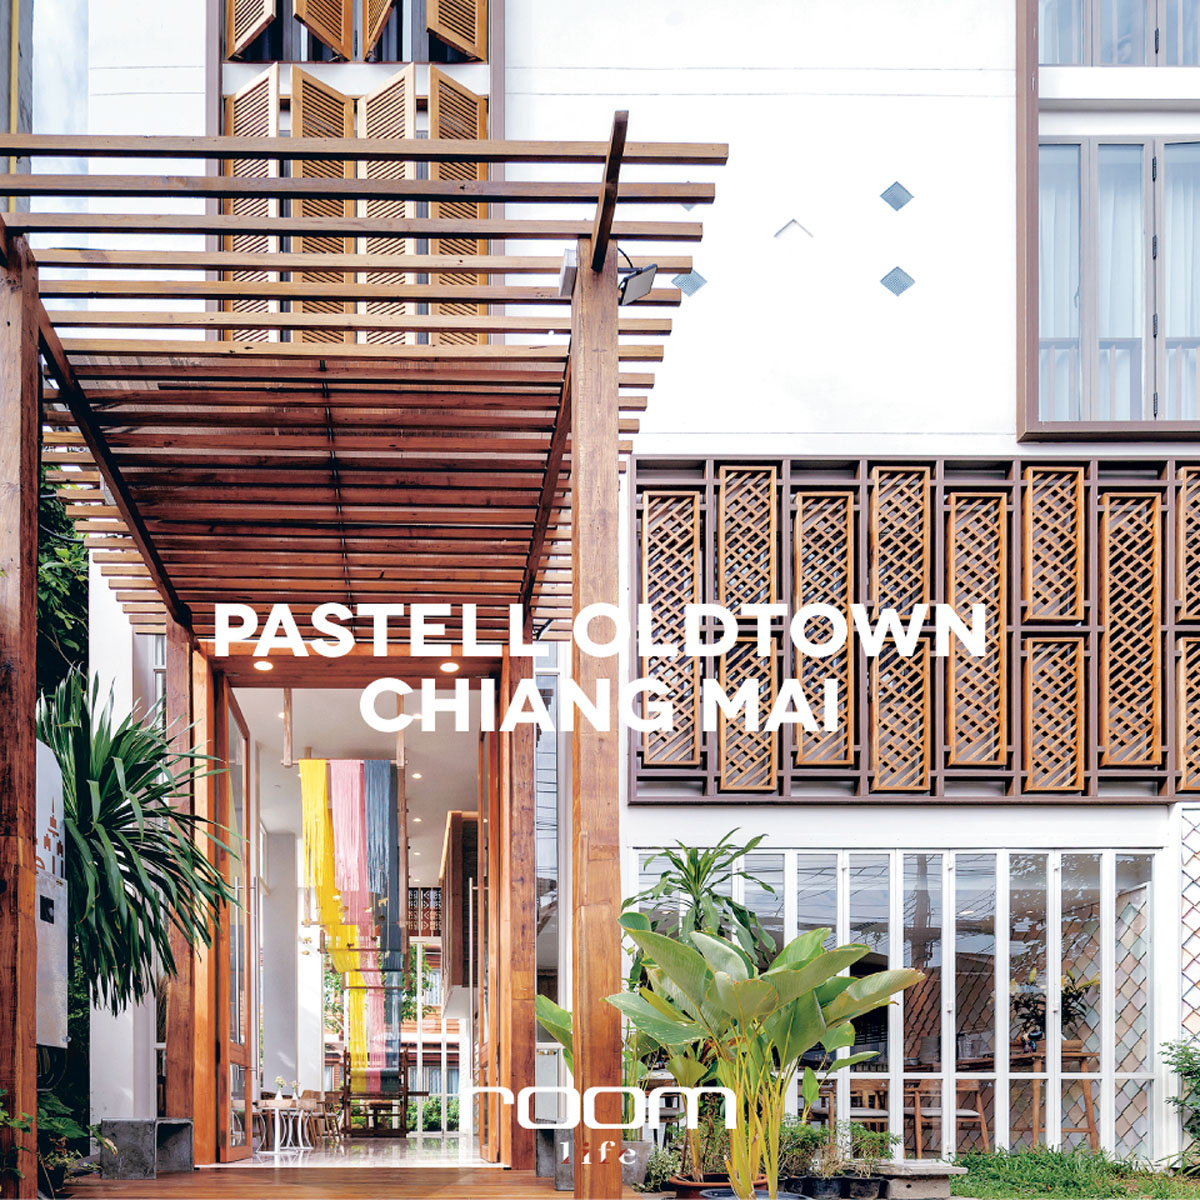 ที่พักเชียงใหม่ 100 Best Design Small Hotels & Hostels Chiang Mai Design Week 2019